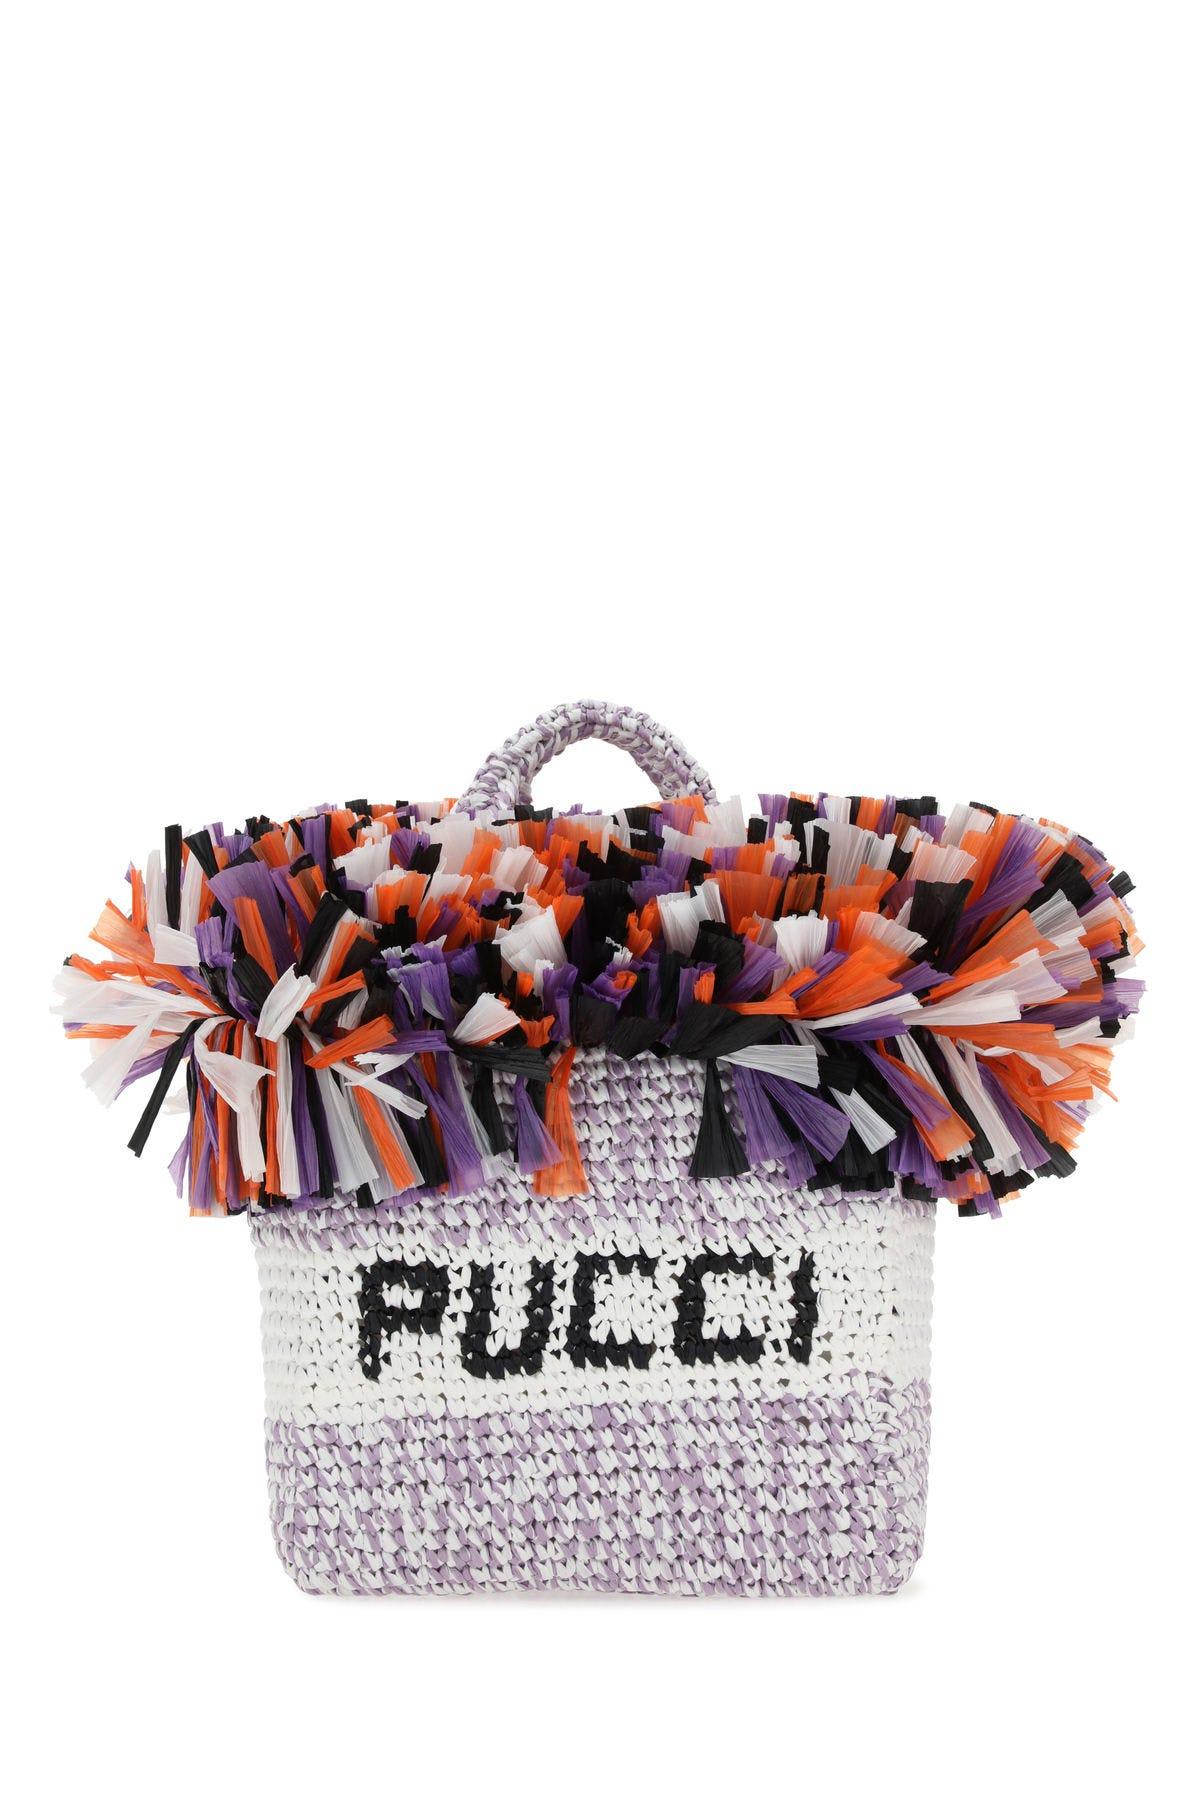 Emilio Pucci Multicolor Raffia Handbag